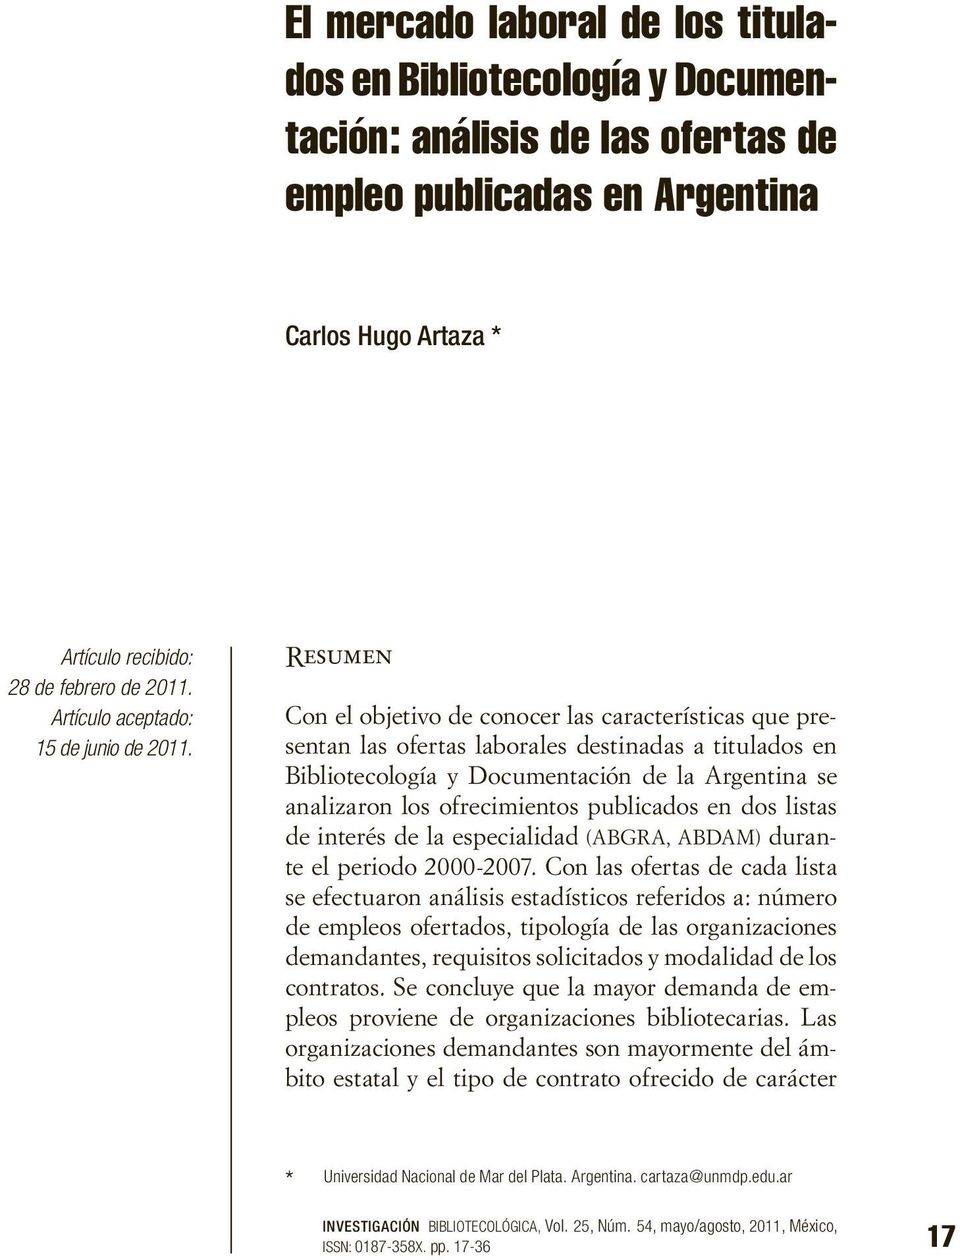 Resumen Con el objetivo de conocer las características que presentan las ofertas laborales destinadas a titulados en Bibliotecología y Documentación de la Argentina se analizaron los ofrecimientos